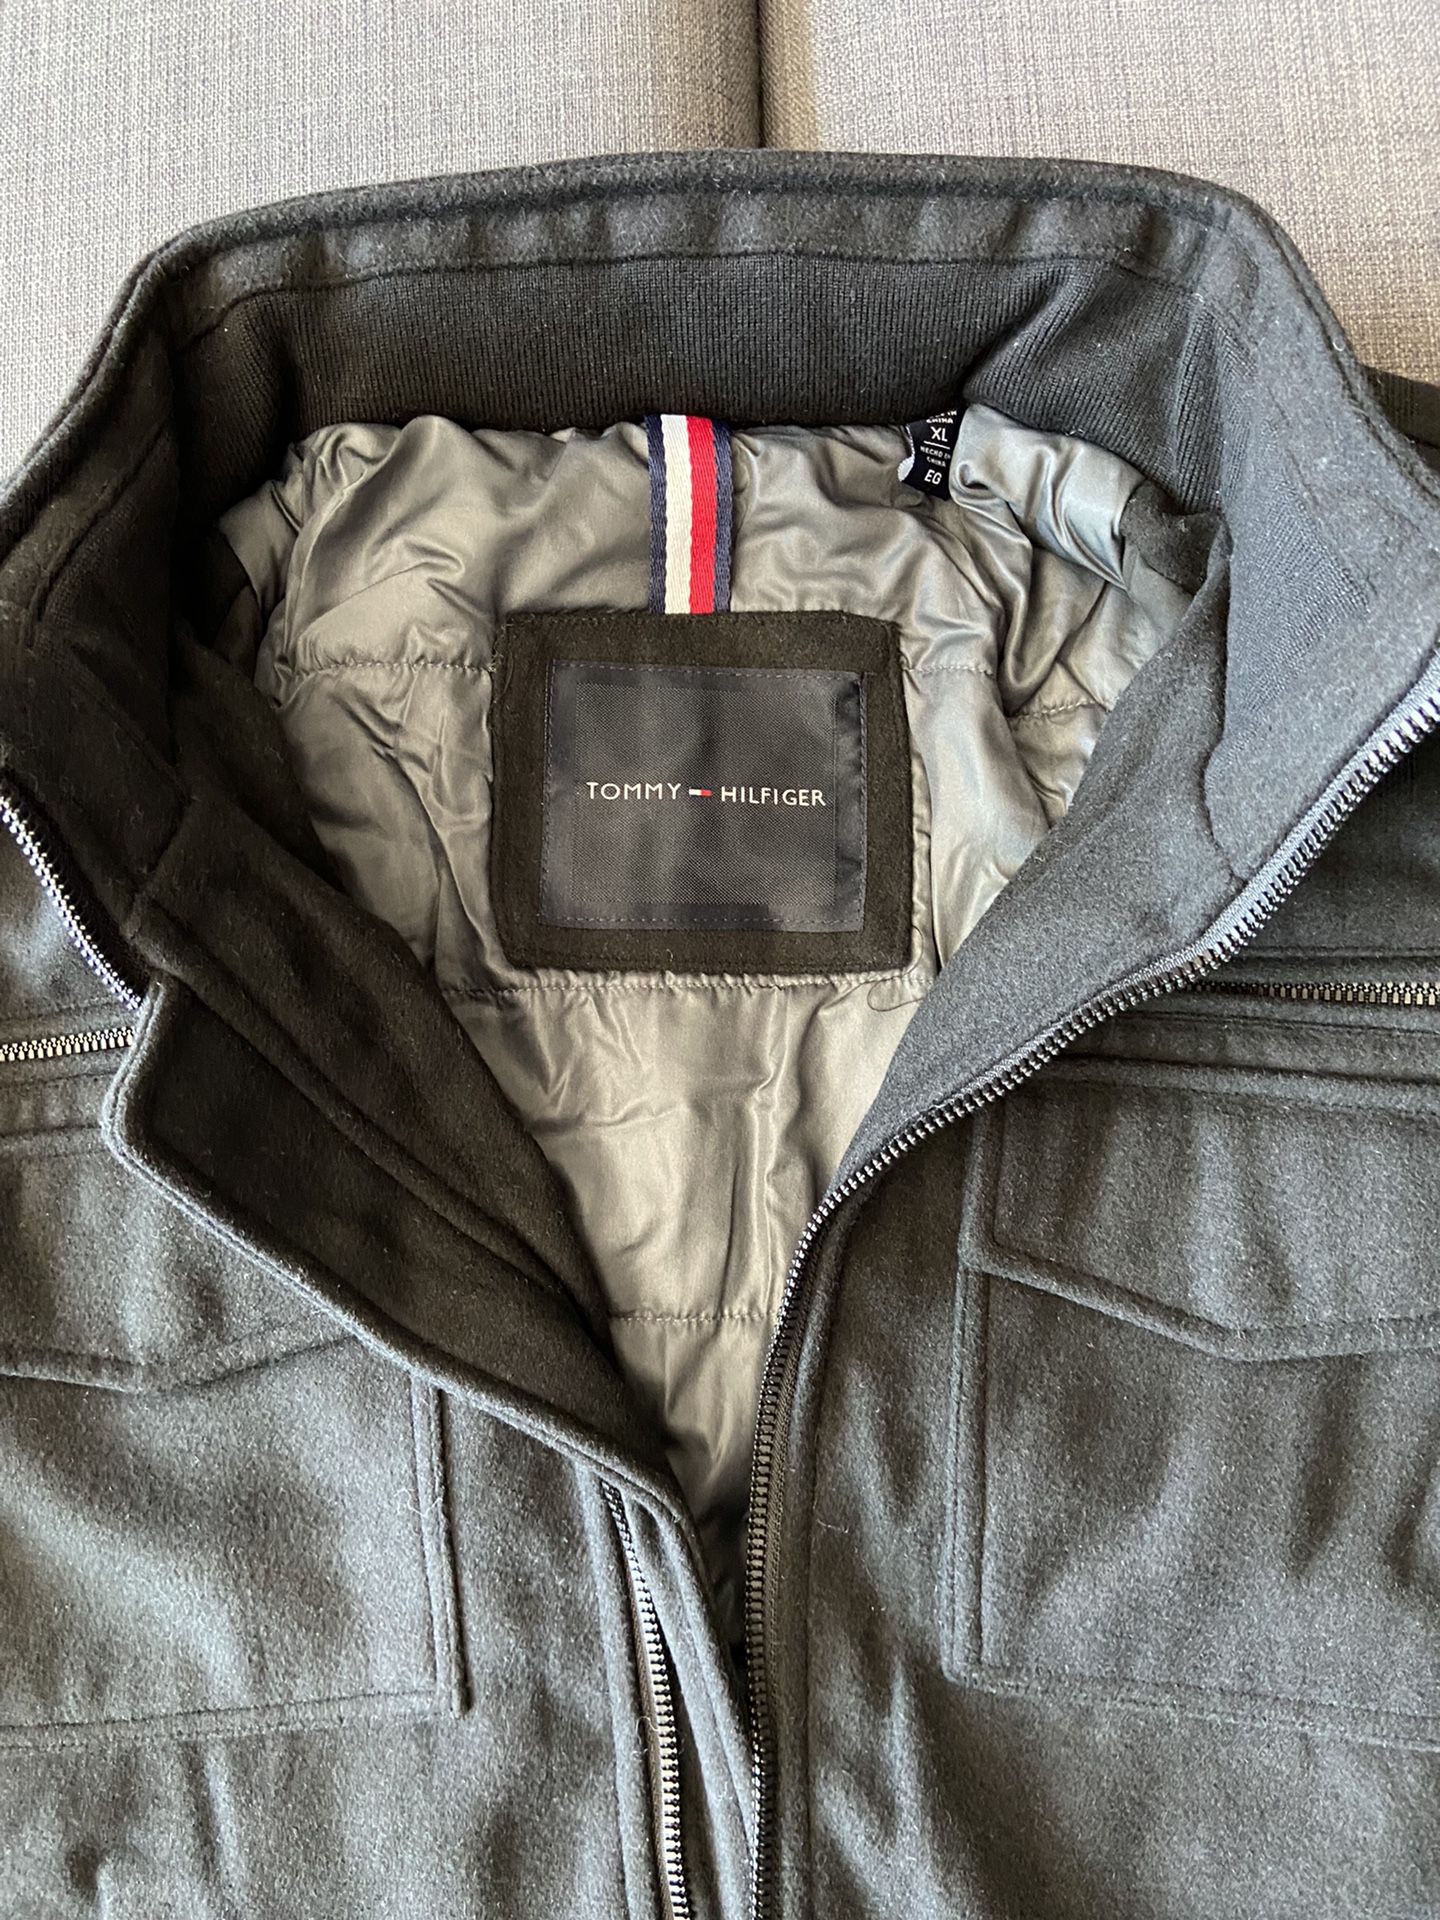 Tommy Hilfiger Wool Blended Boomber Jacket ( Black Color, XL Size )